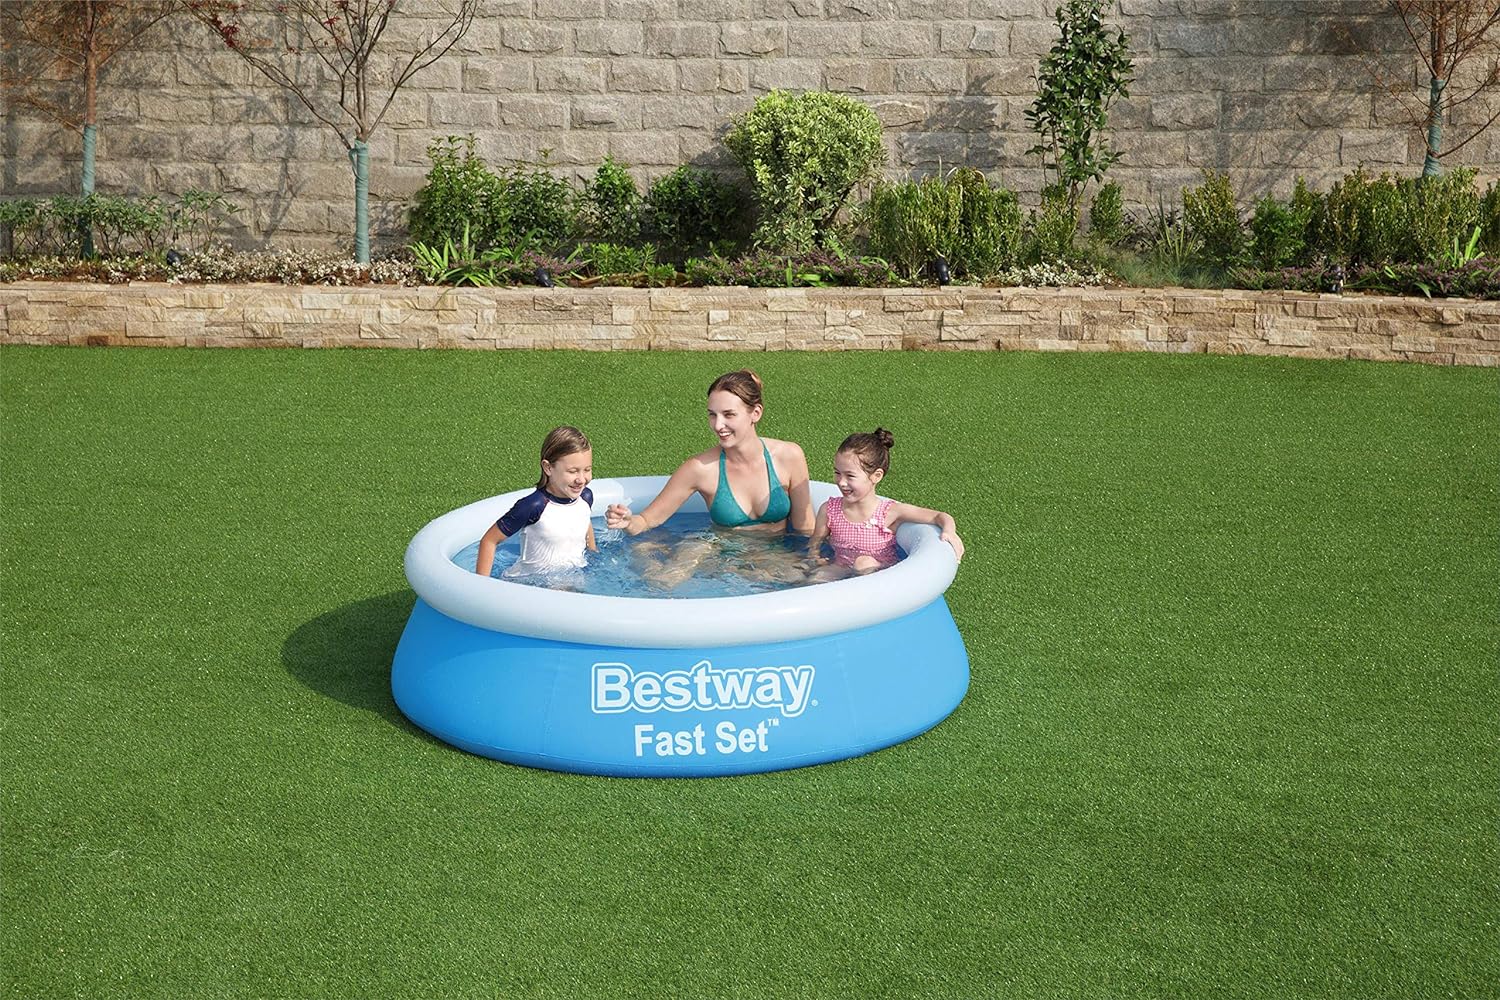 Bestway 57392 Fast Set zwembad, rond, zonder pomp, 183 x 51 cm,Blauw